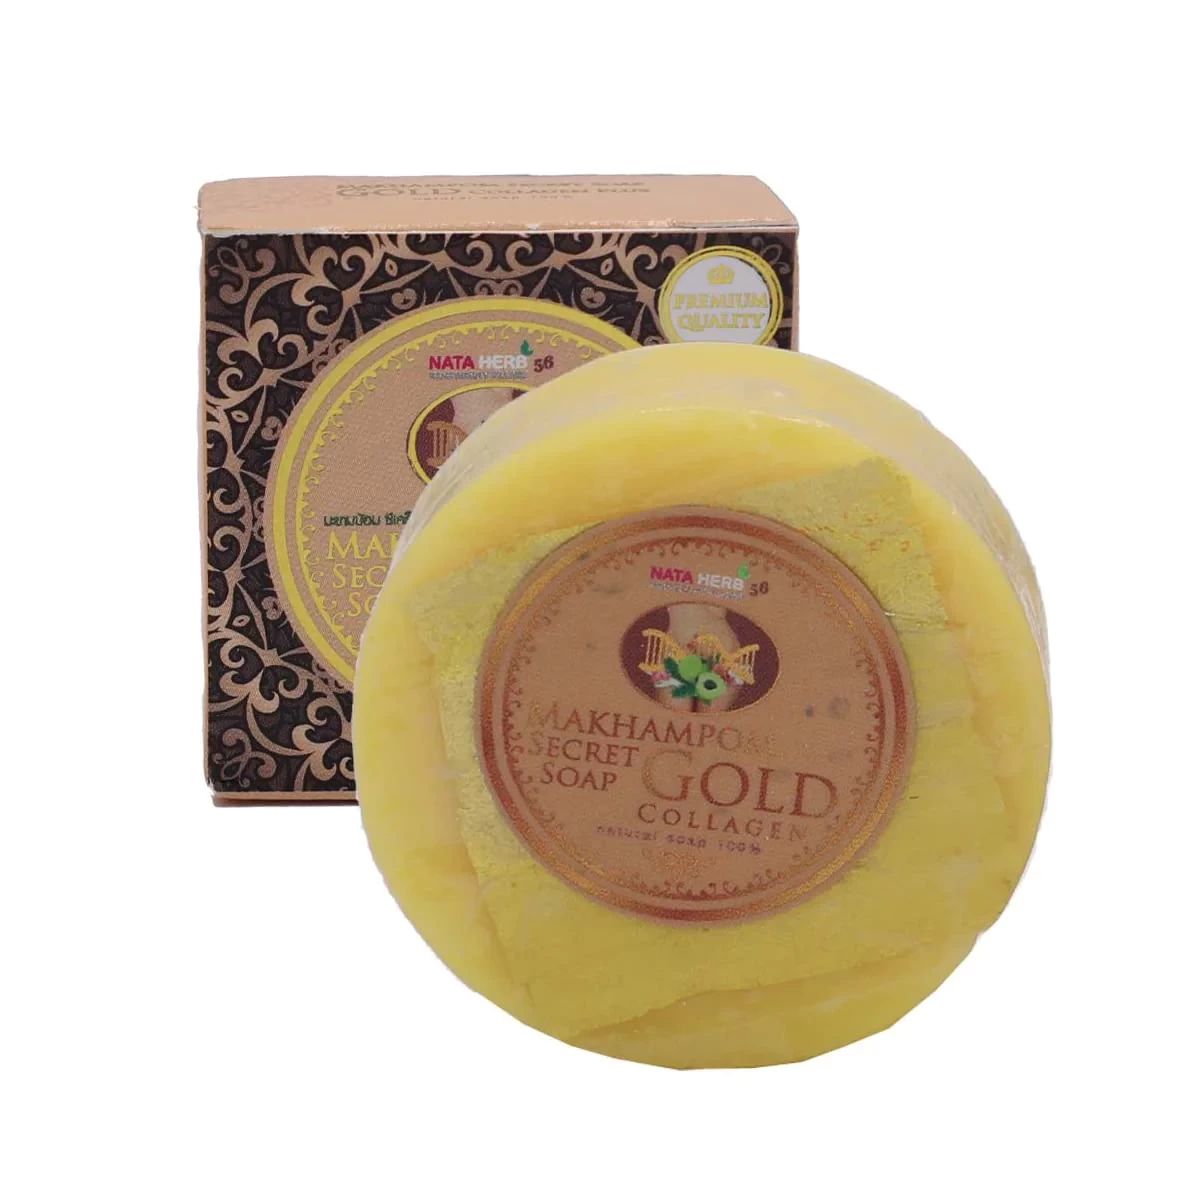 Natalie Makhampom Secret Soap Gold Collagen 50g